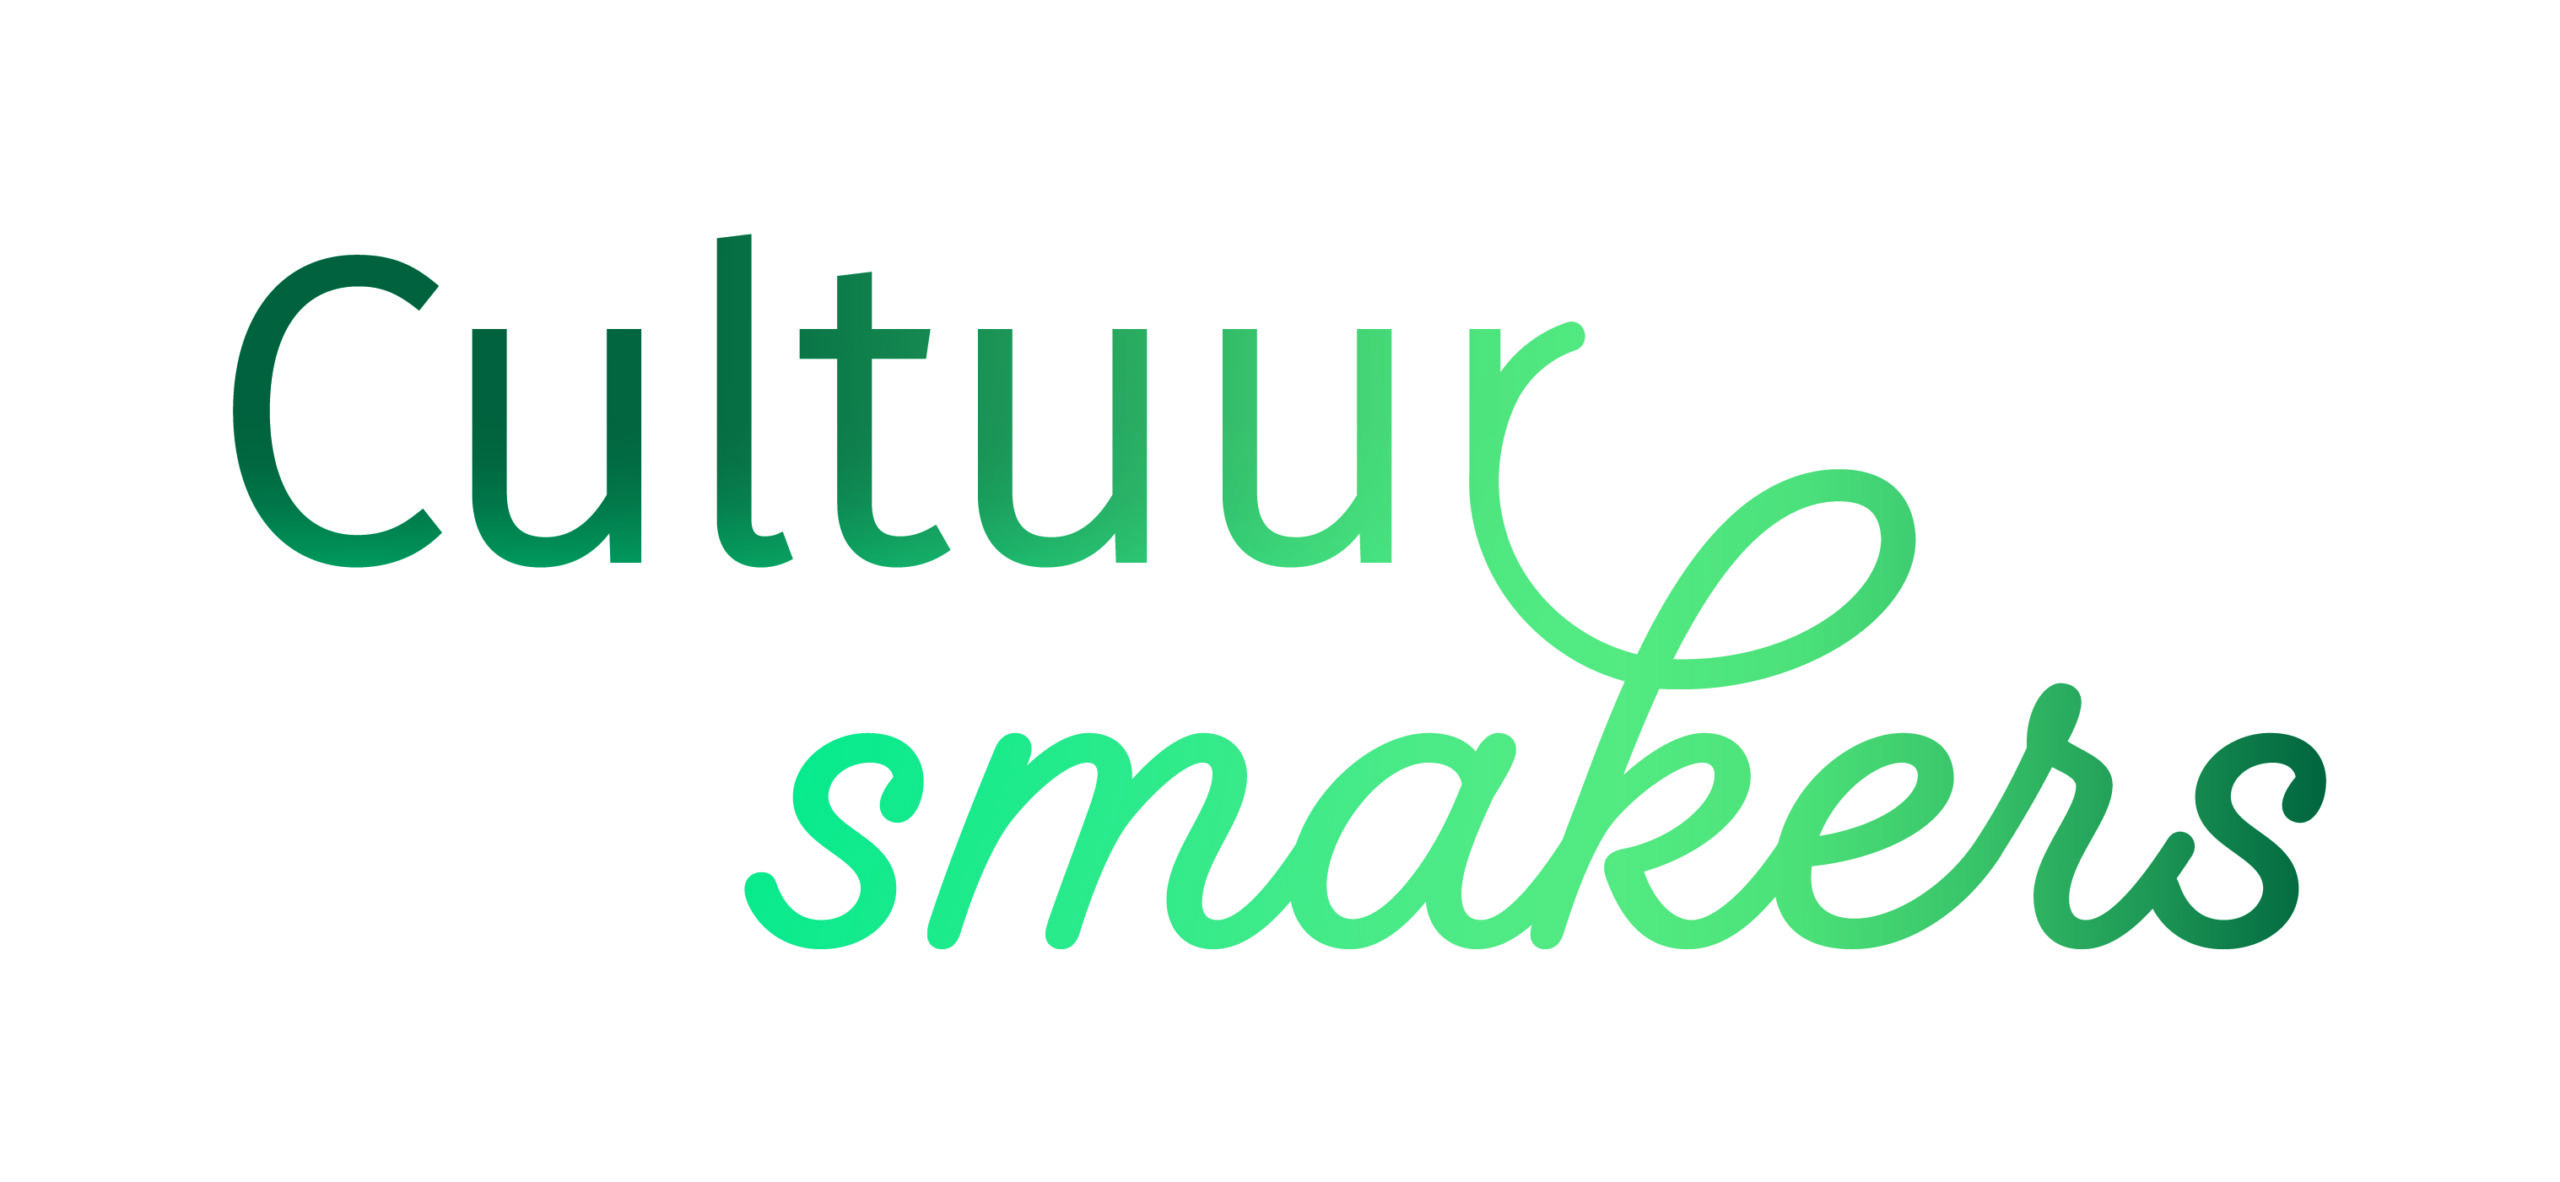 Cultuursmakers_Logo_CMYK_kleur